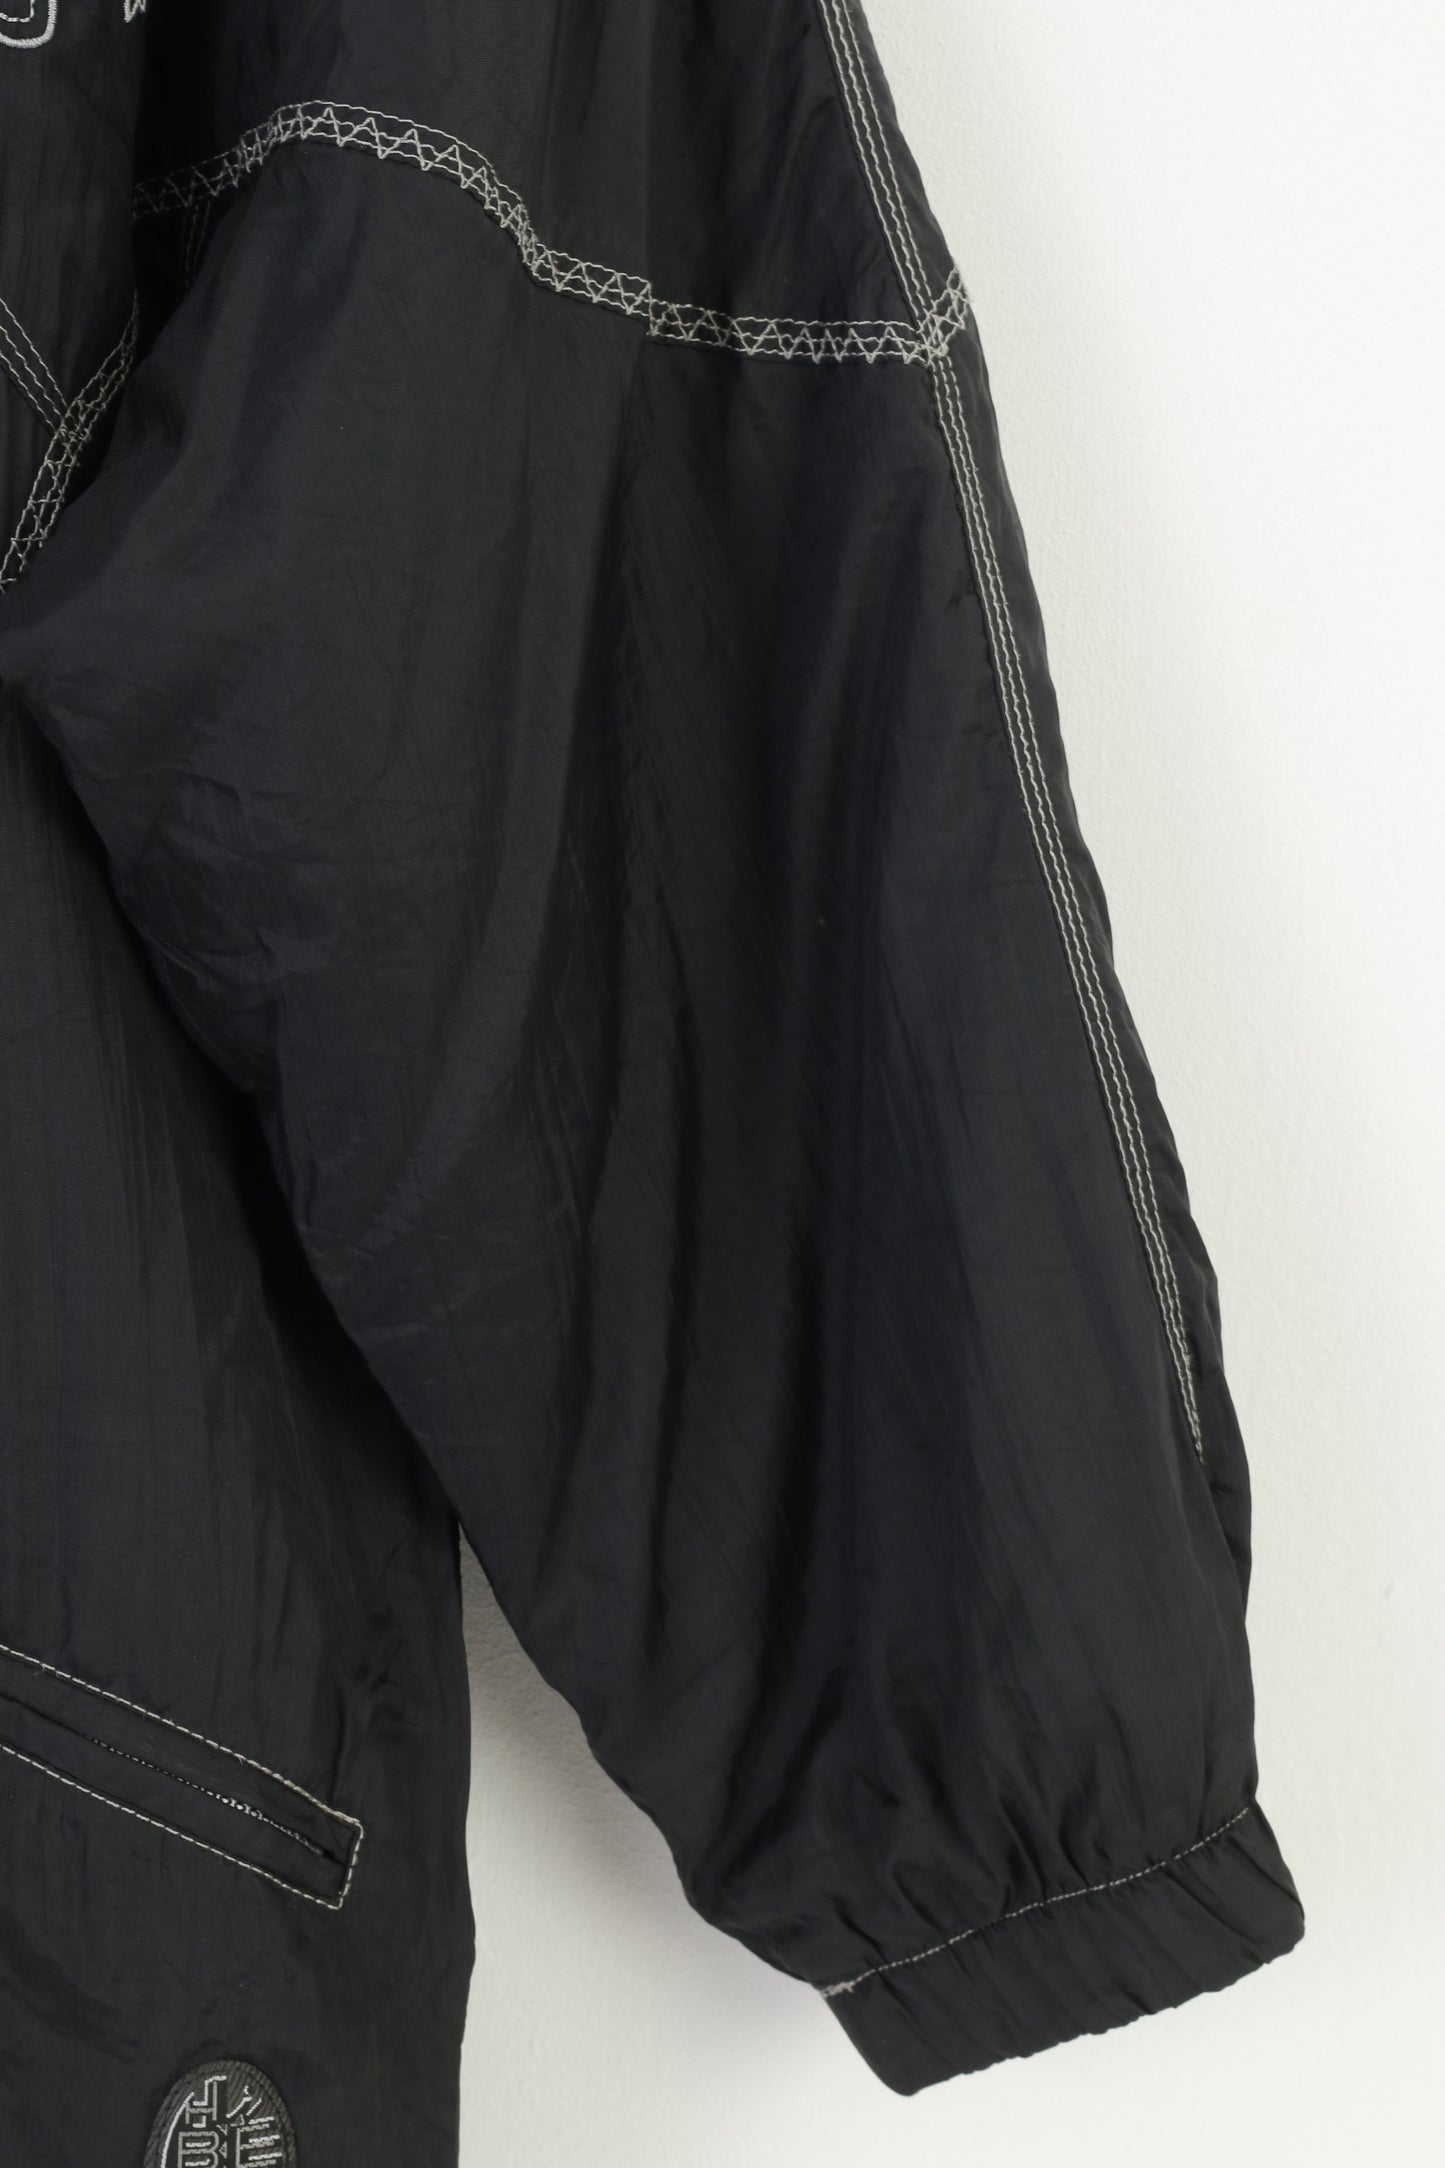 Veste Vintage XL pour femmes, épaulettes noires, fermeture éclair complète, en Nylon, imperméable, rembourré, haut brodé Vintage